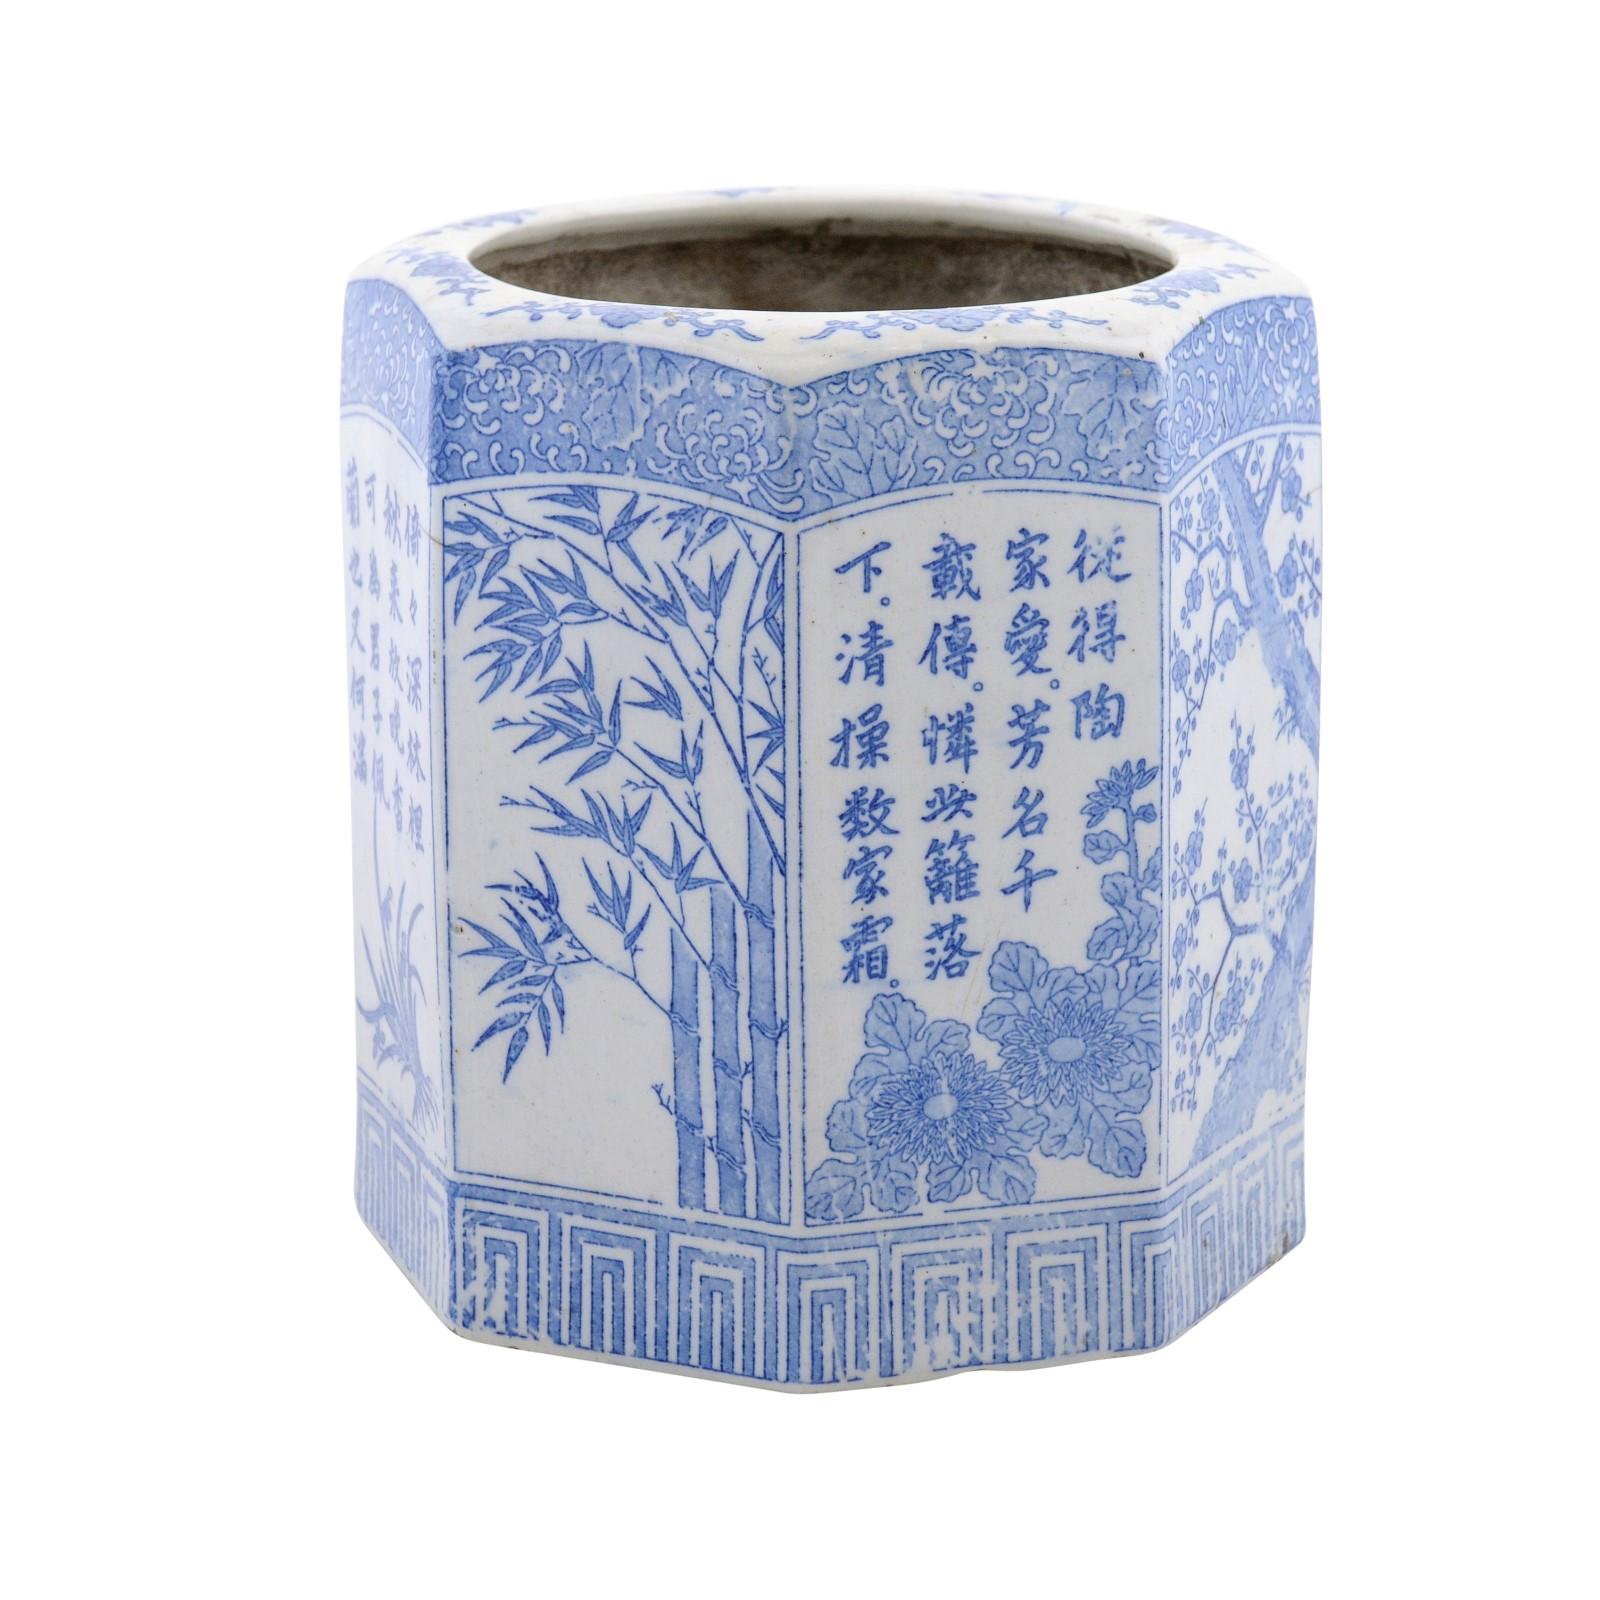 Chinesische sechseckige Porzellanvase in Blau und Weiß mit handbemaltem Laubdekor